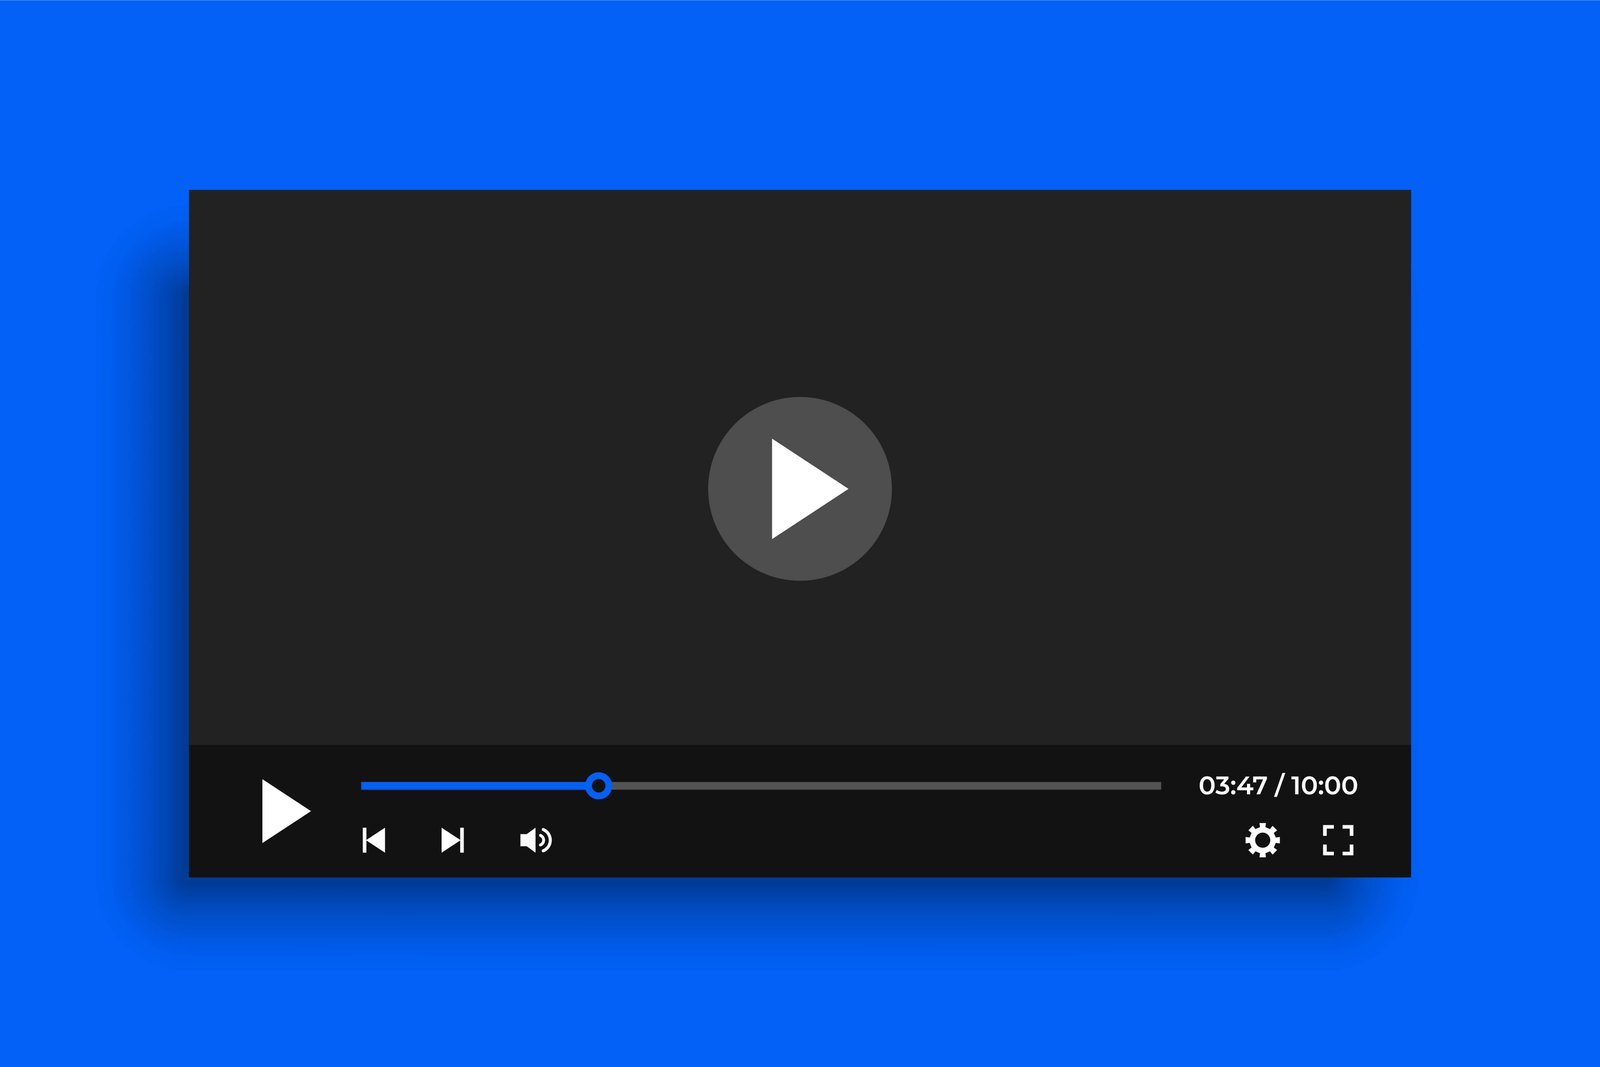 Baixar Vídeos Gratuitamente: Descubra os Melhores Apps Para Baixar Seus Vídeos Favoritos